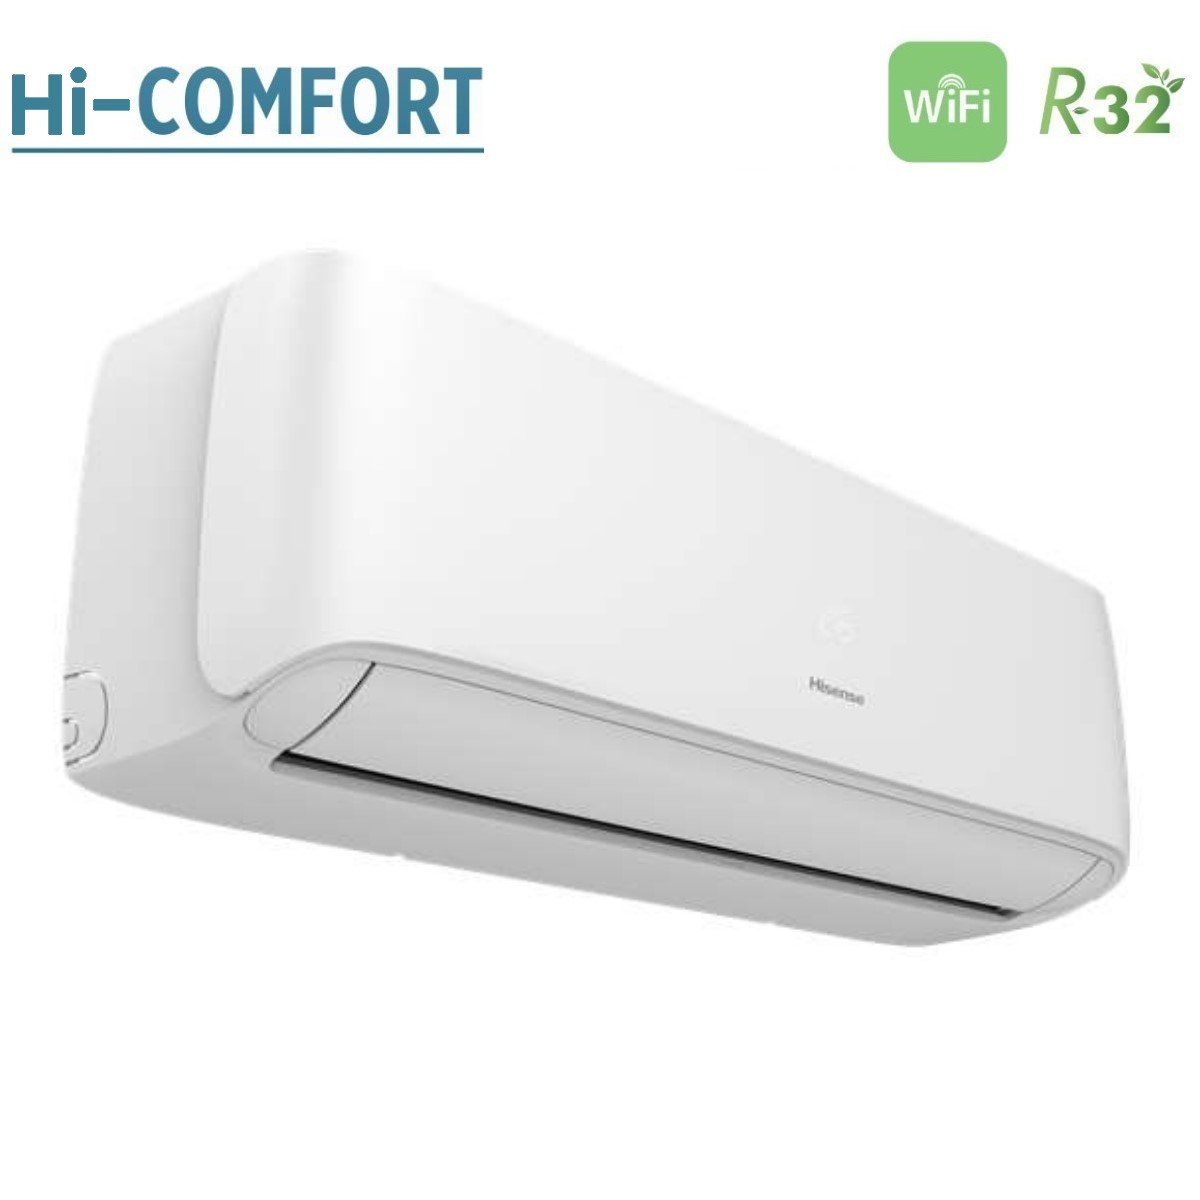 immagine-4-hisense-climatizzatore-condizionatore-hisense-trial-split-inverter-serie-hi-comfort-7912-con-3amw52u4rja-r-32-wi-fi-integrato-7000900012000